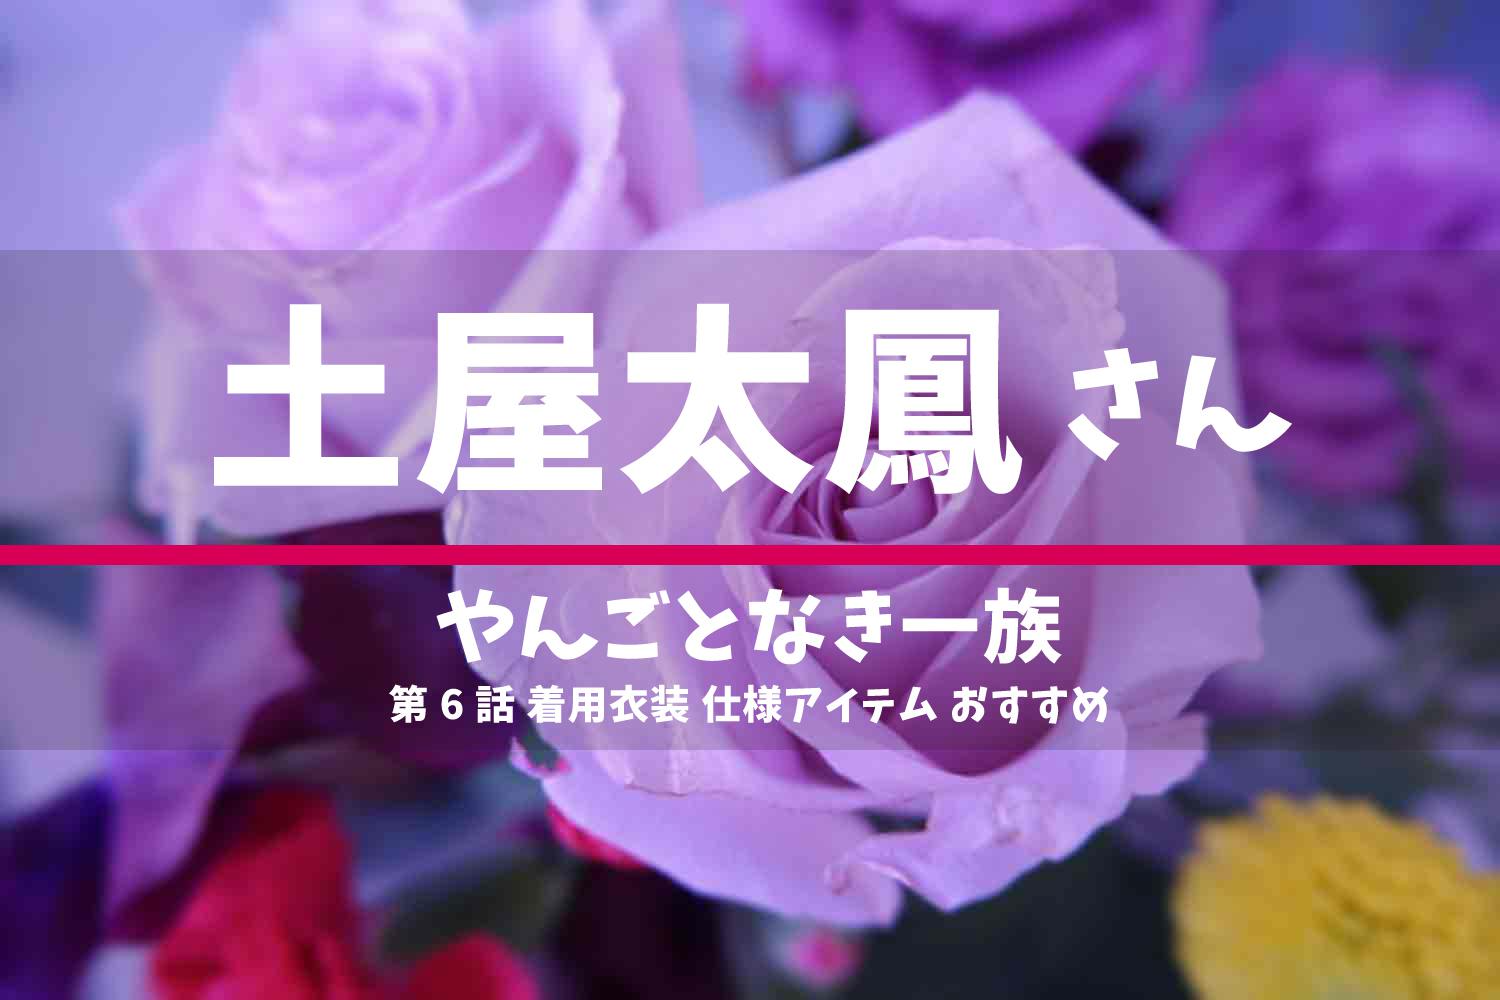 やんごとなき一族 土屋太鳳さん ドラマ 衣装 2022年5月26日放送